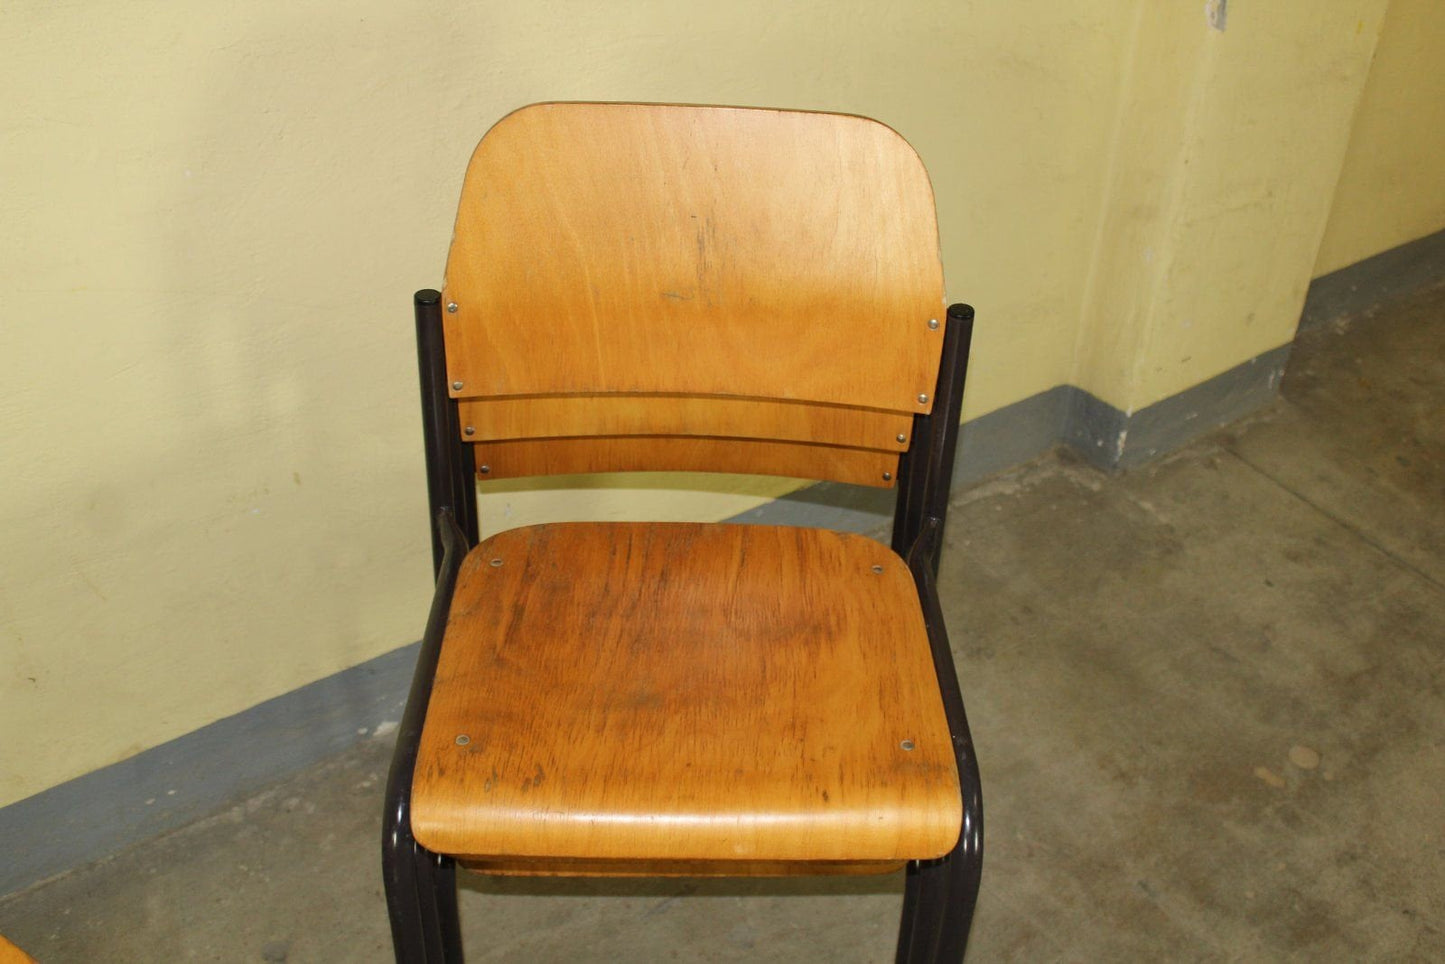 2er Set Vintage Holz Stapelstuhl Industrial Loft Stuhl Stühle